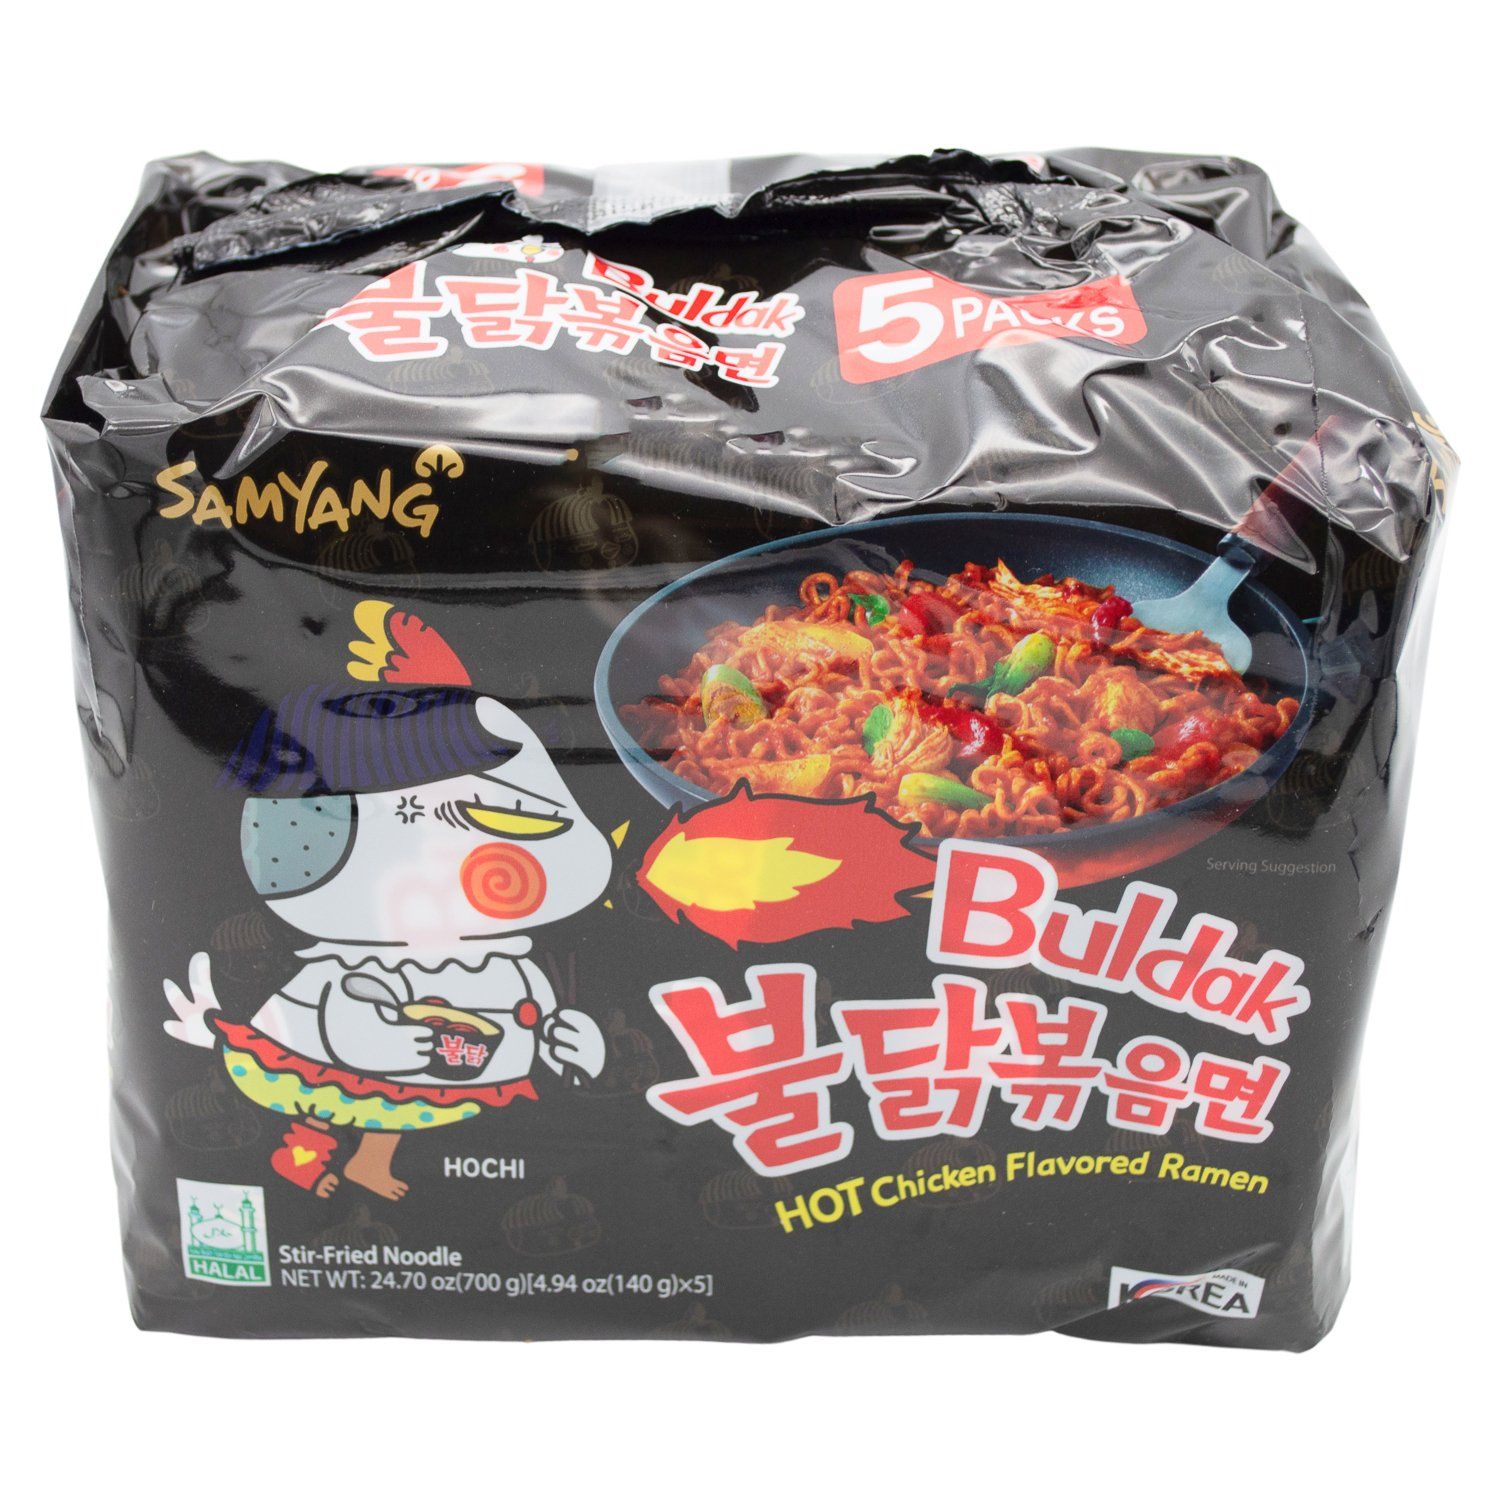 Samyang Buldak Spicy Noodle Samyang Chicken 4.94 Oz-5 Count 